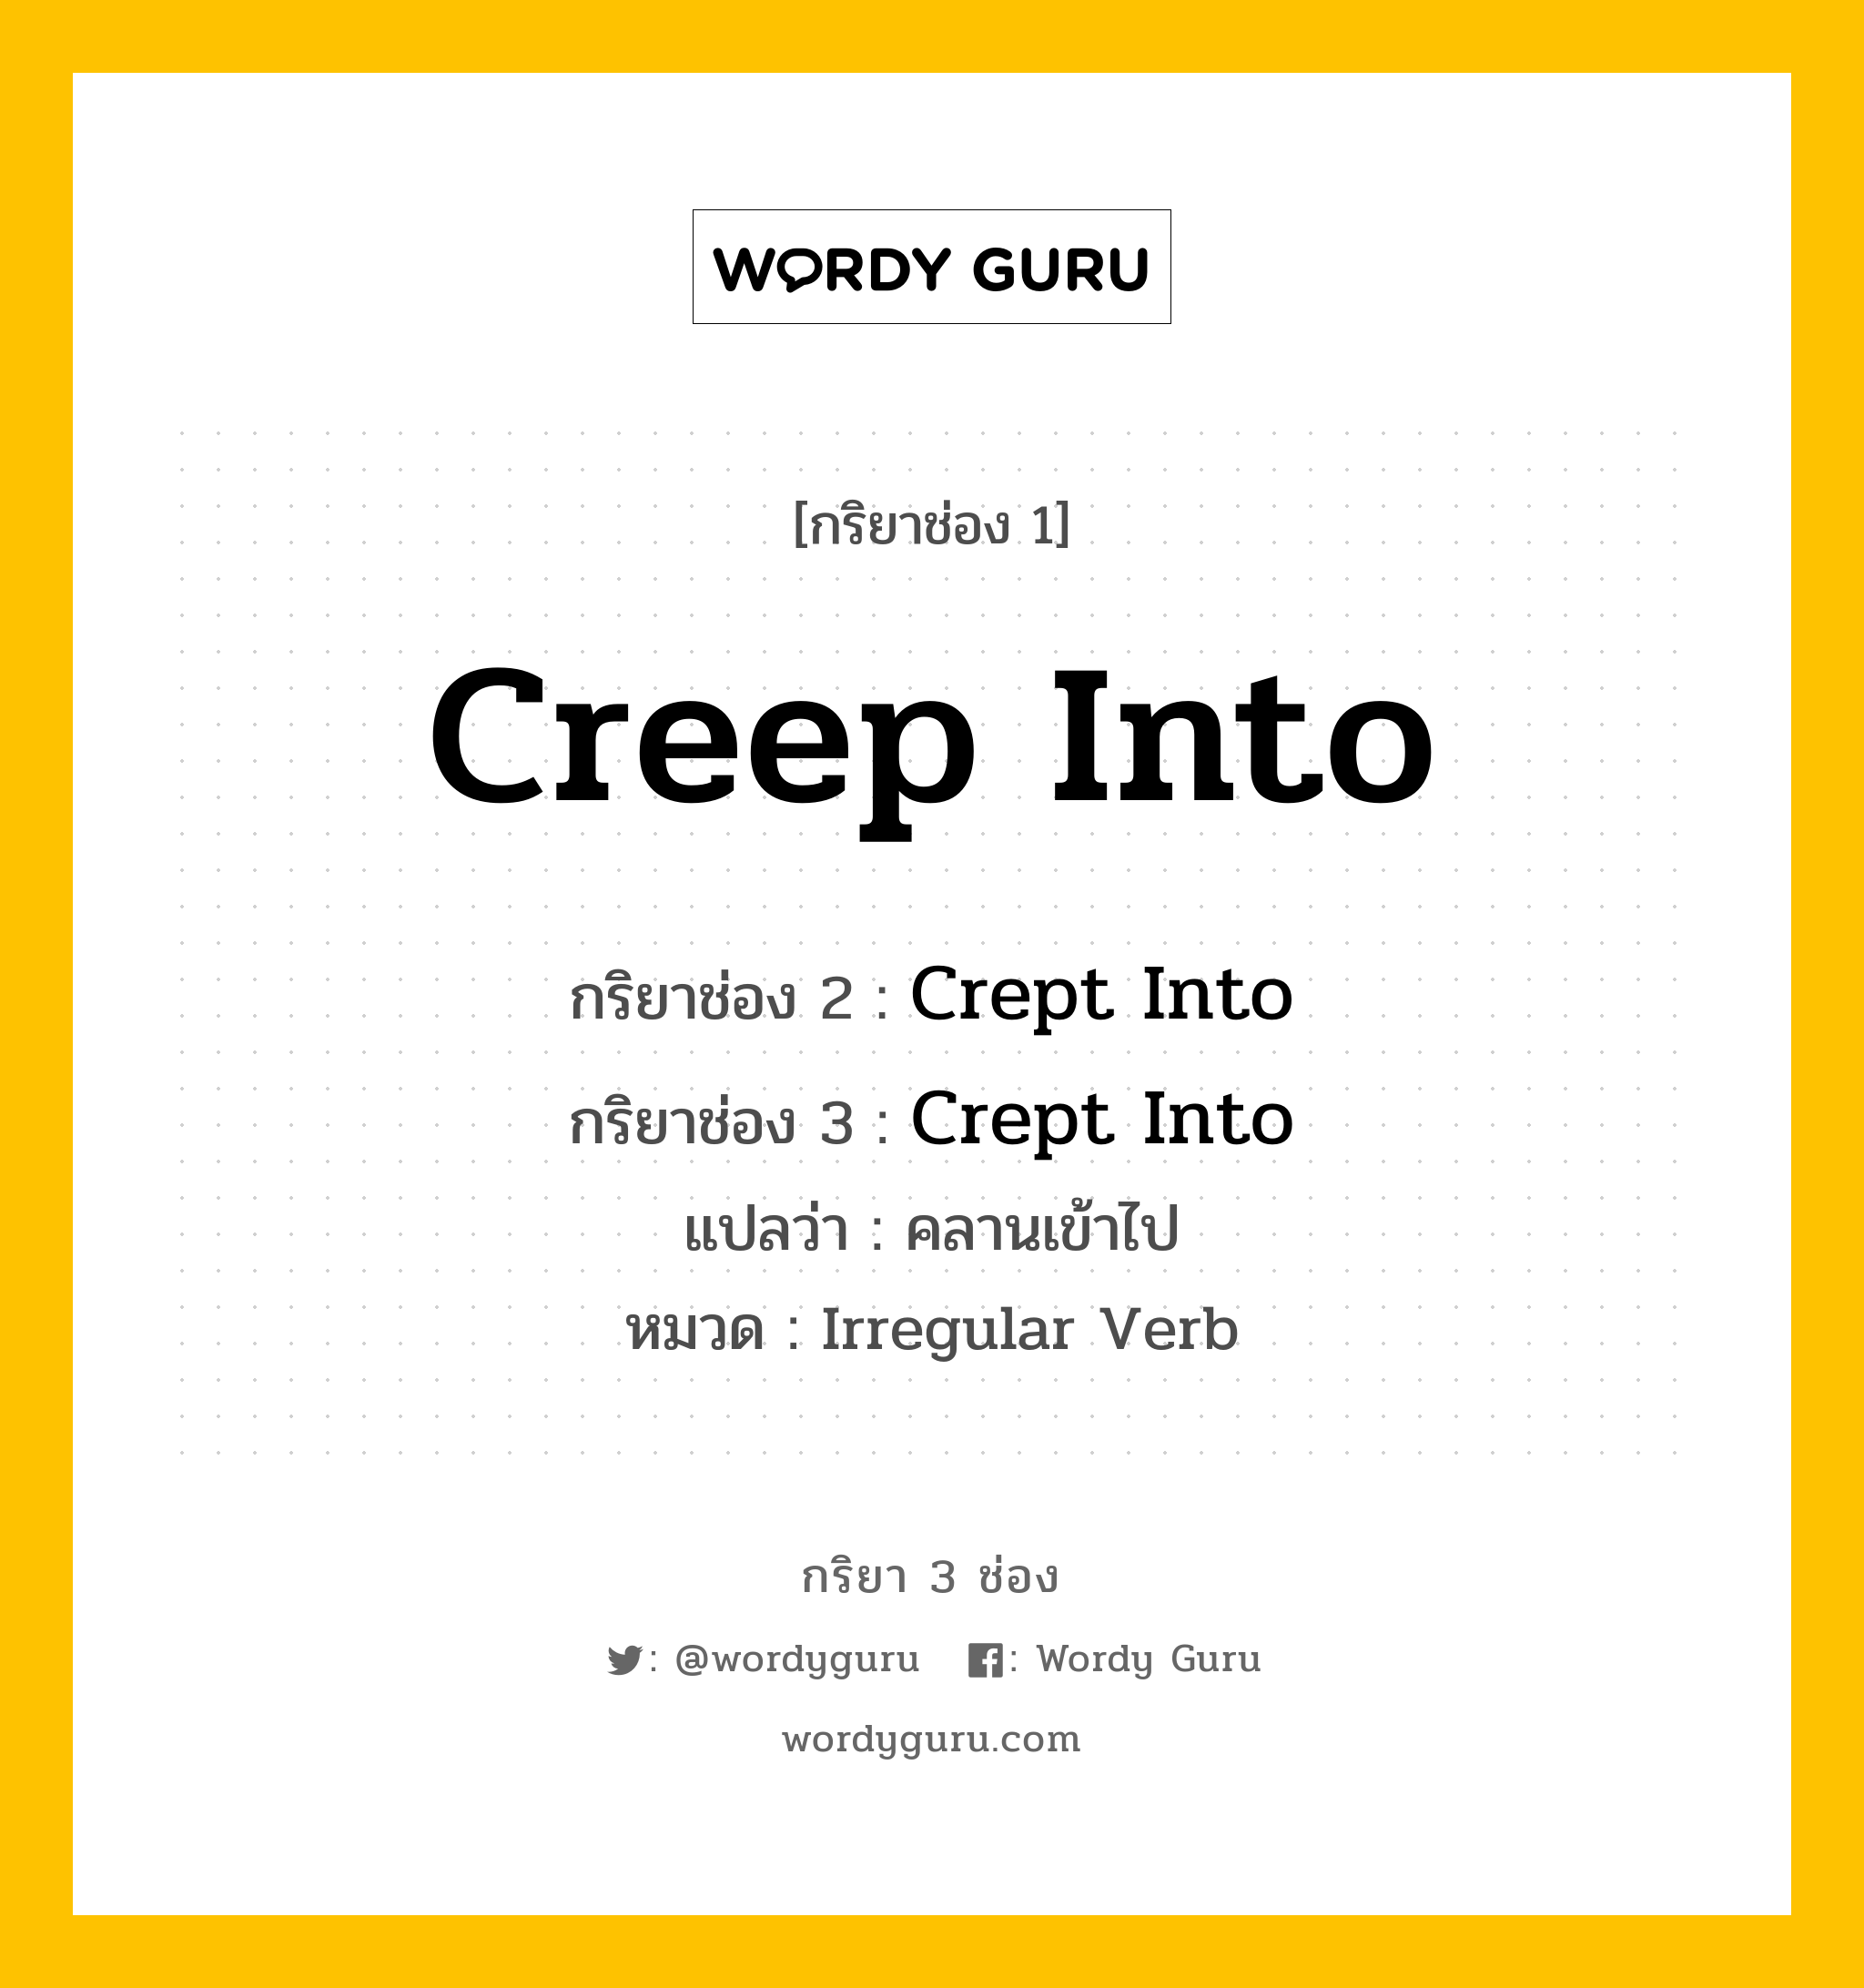 กริยา 3 ช่อง: Creep Into ช่อง 2 Creep Into ช่อง 3 คืออะไร, กริยาช่อง 1 Creep Into กริยาช่อง 2 Crept Into กริยาช่อง 3 Crept Into แปลว่า คลานเข้าไป หมวด Irregular Verb หมวด Irregular Verb